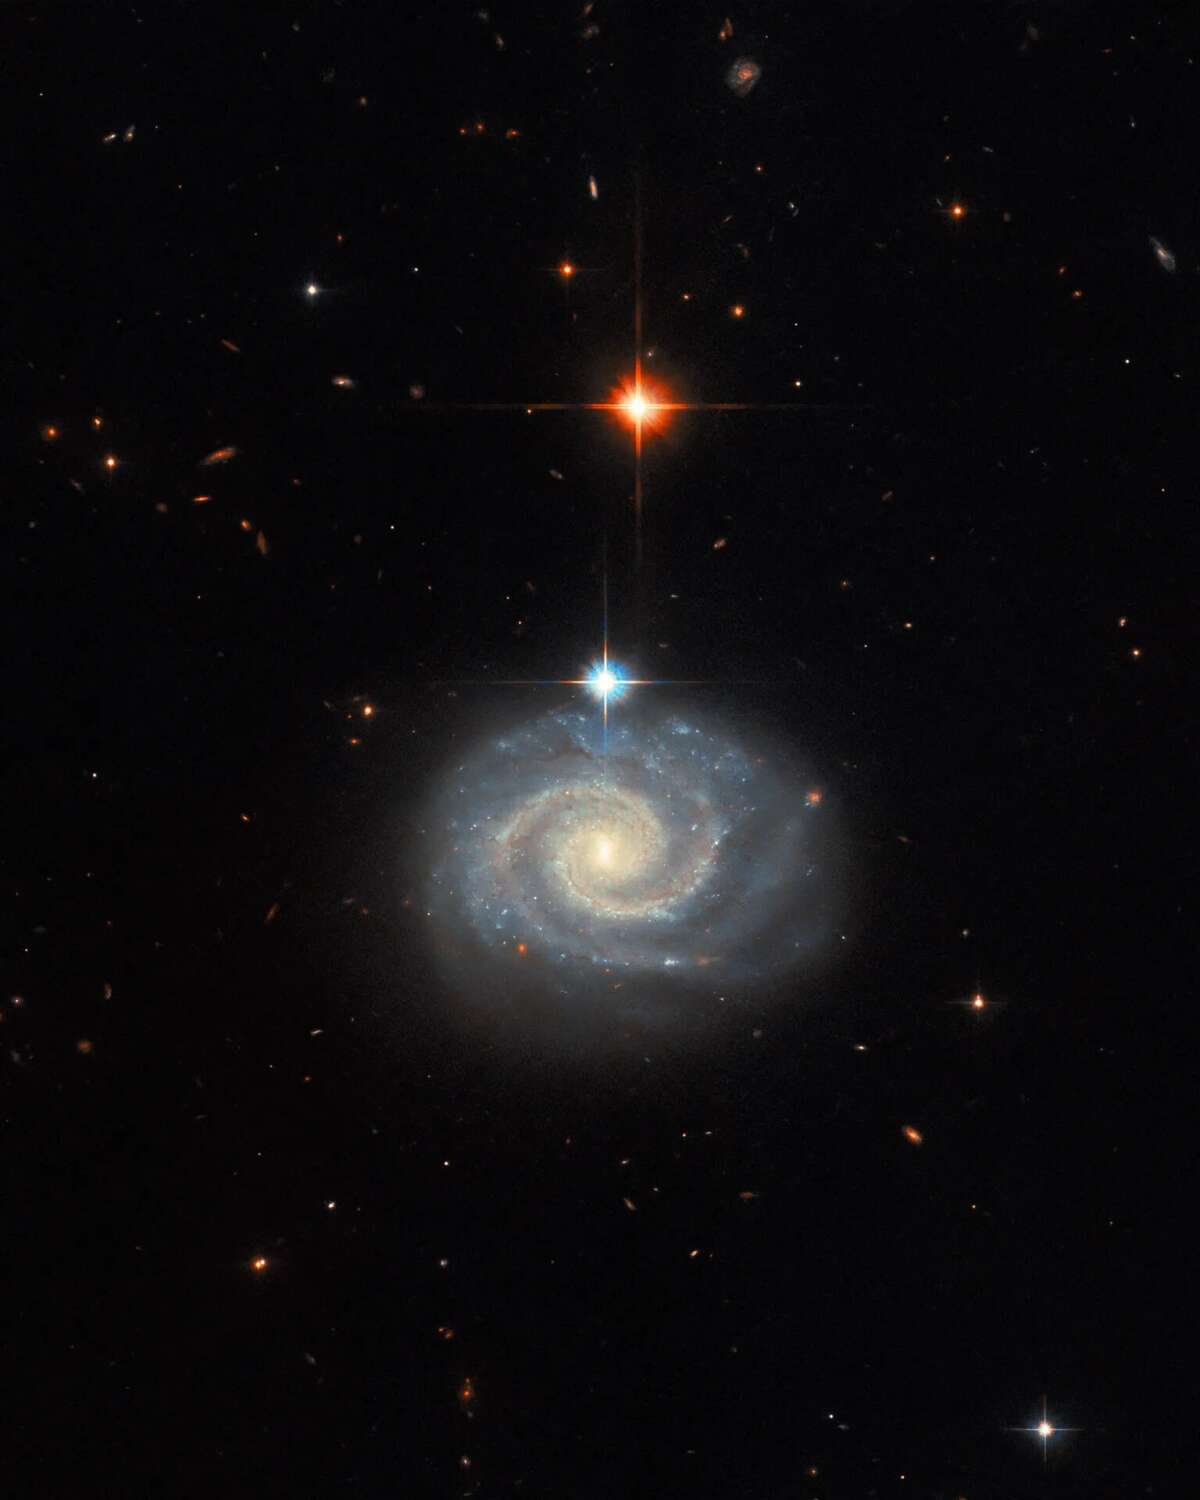 "«Хаббл» заснял галактику MCG-01-24-014 из семейства сейфертовских галактик"